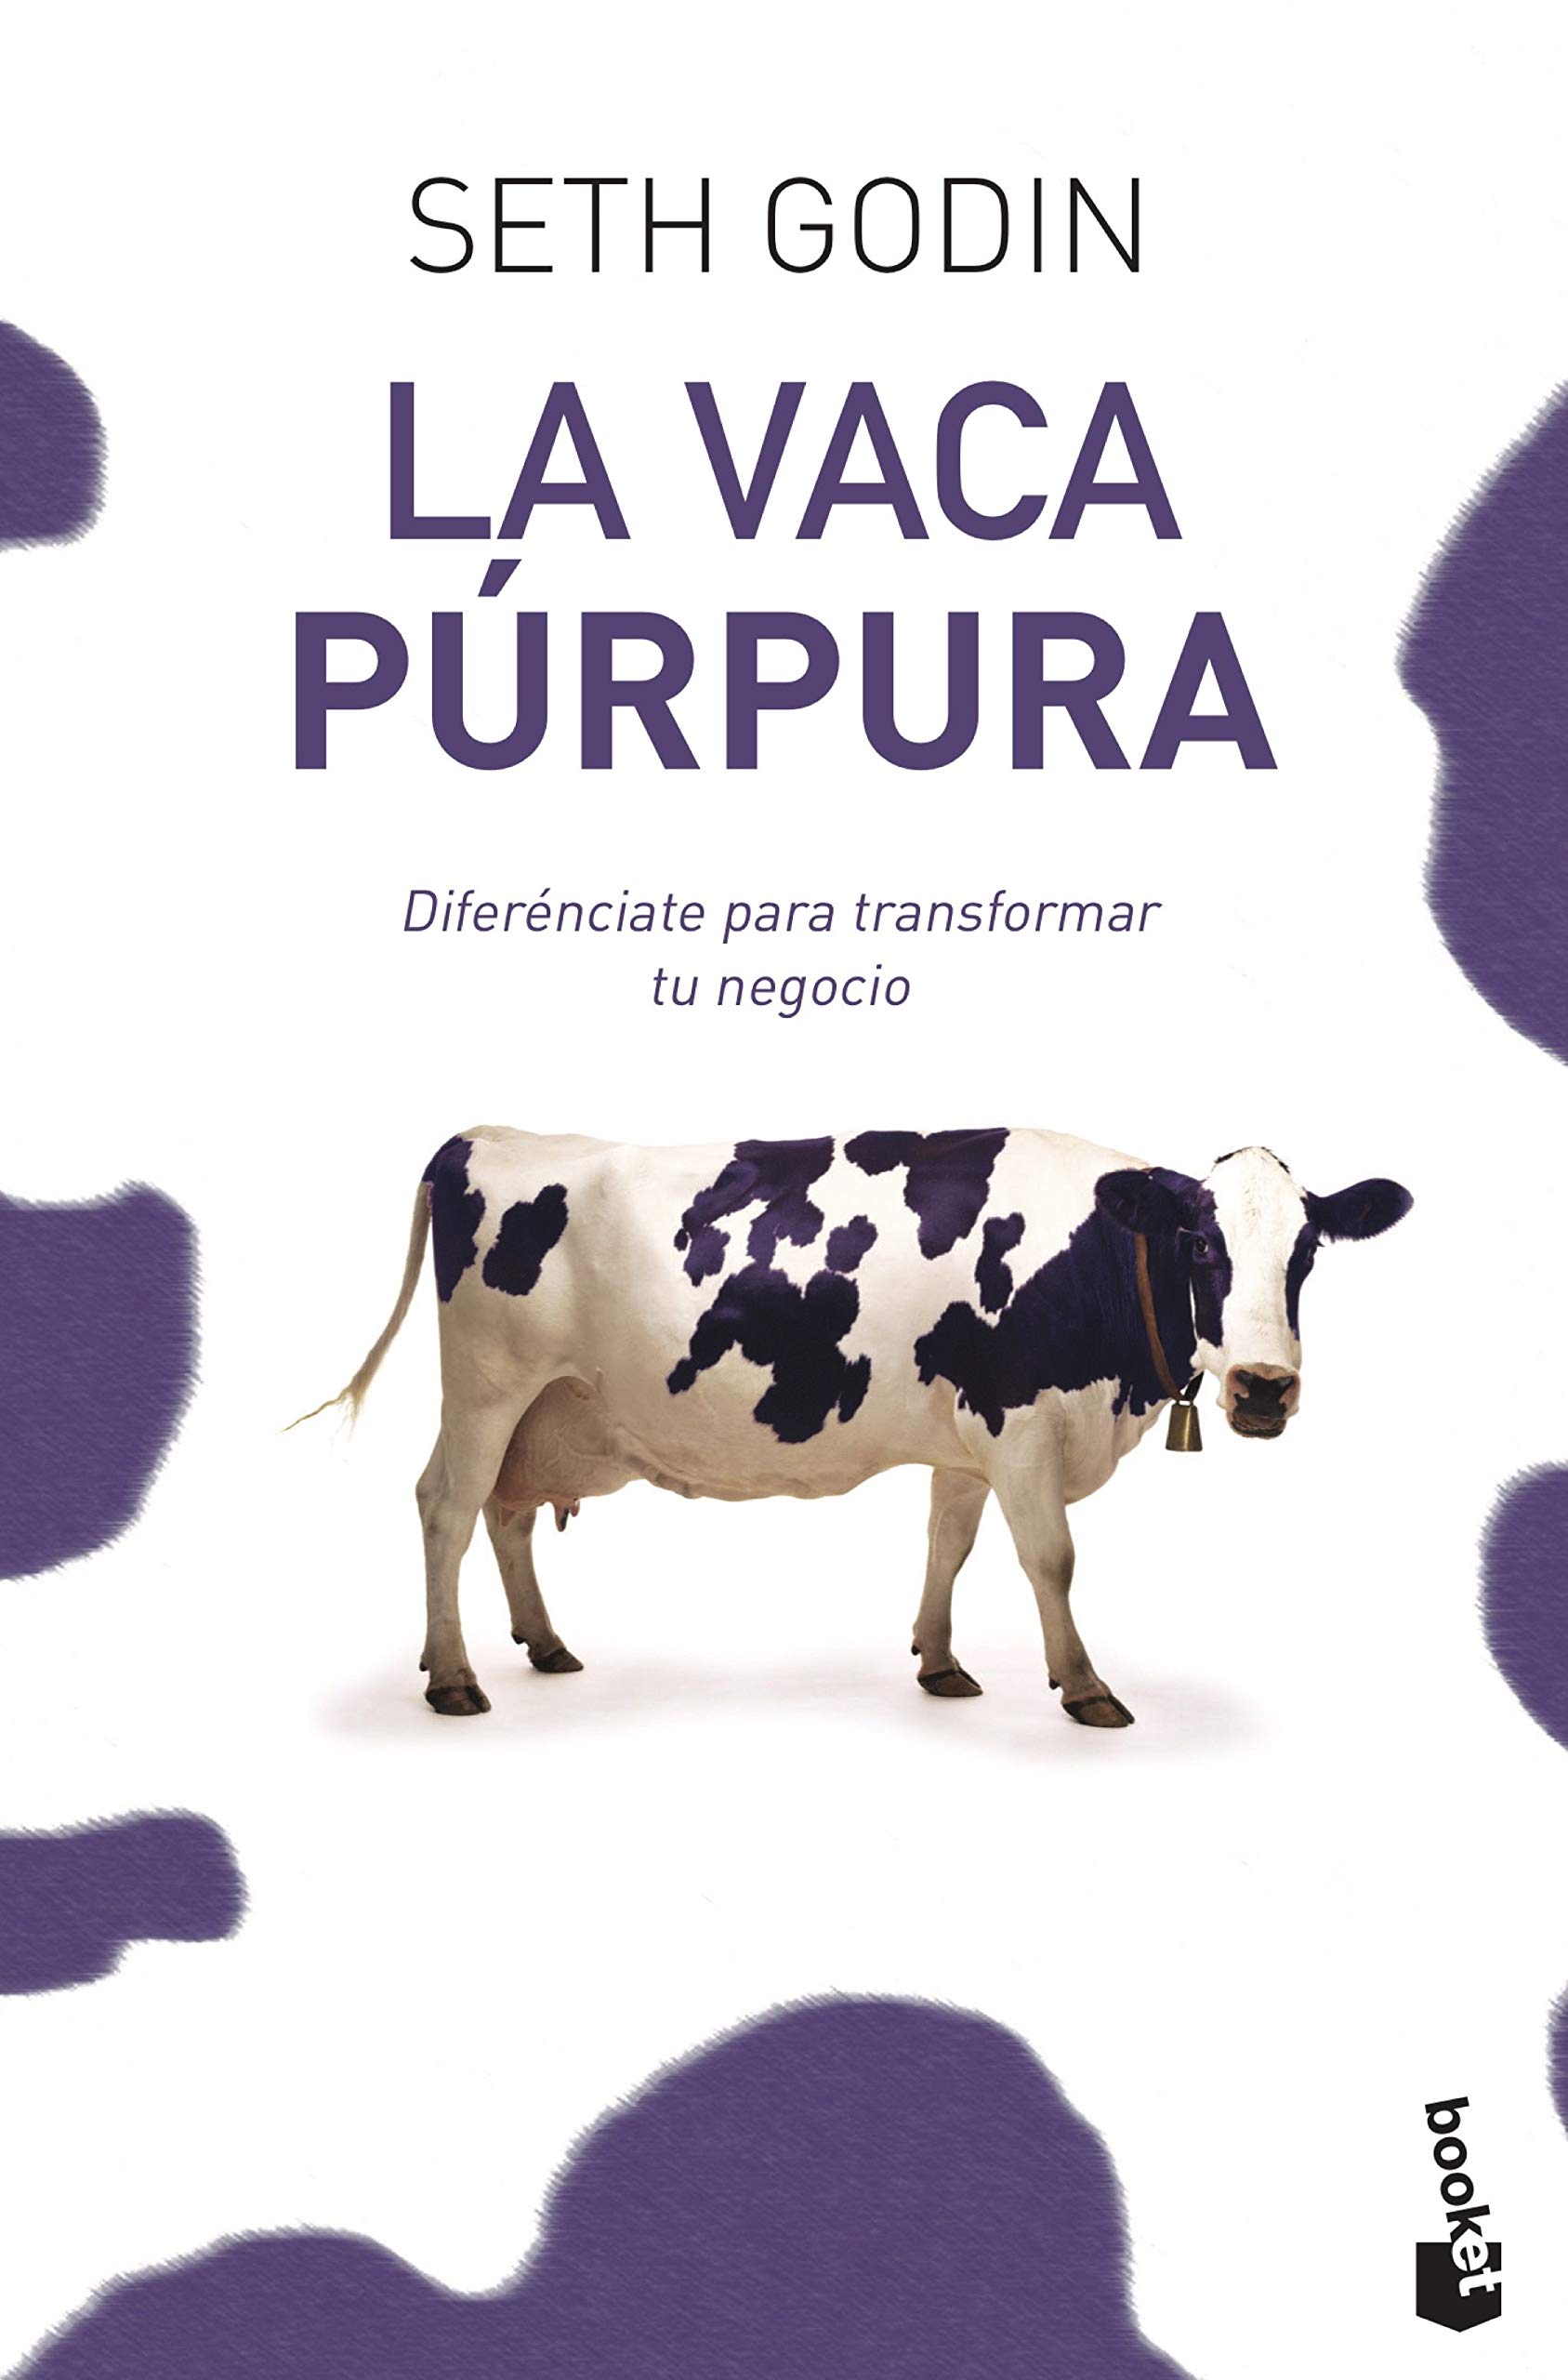 Vaca púrpura: destacar es más sencillo de lo que imaginas - Diana Speaks